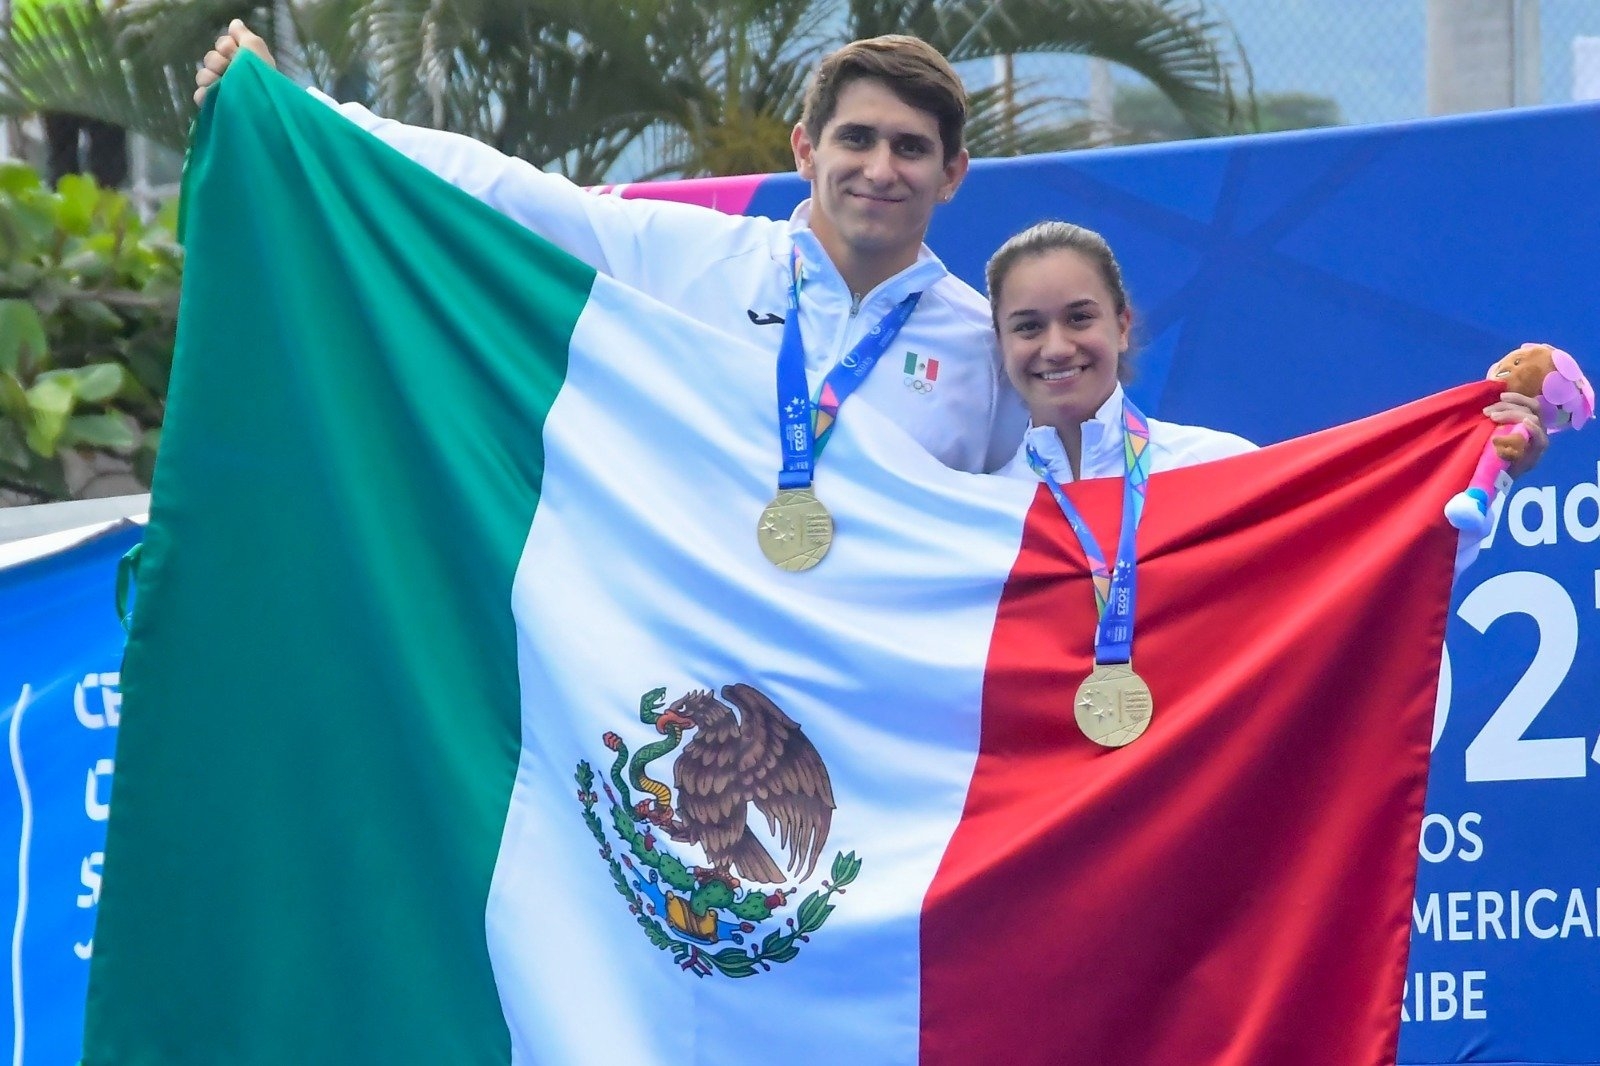 Ya son casi 300 medalla las que consigue México en competencia